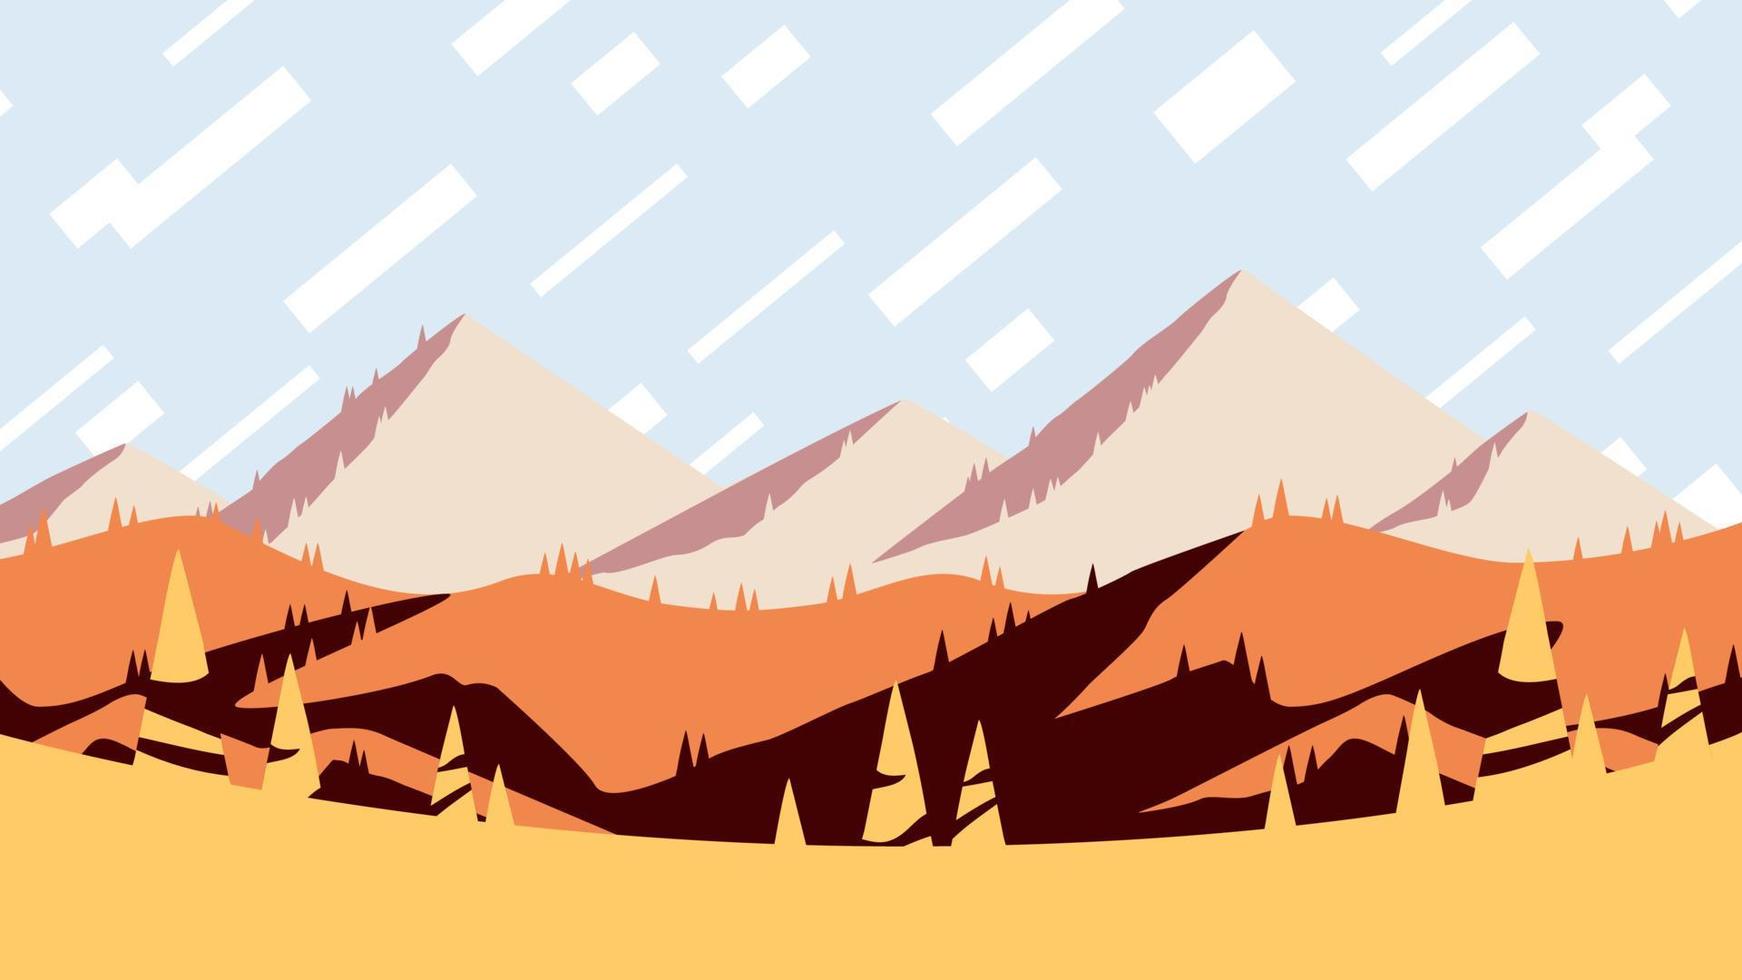 saison d'automne à la montagne, illustration d'affiche de paysage design plat. coucher de soleil d'automne chaud sur l'affiche des collines jaunes, illustration vectorielle horizontale. vecteur